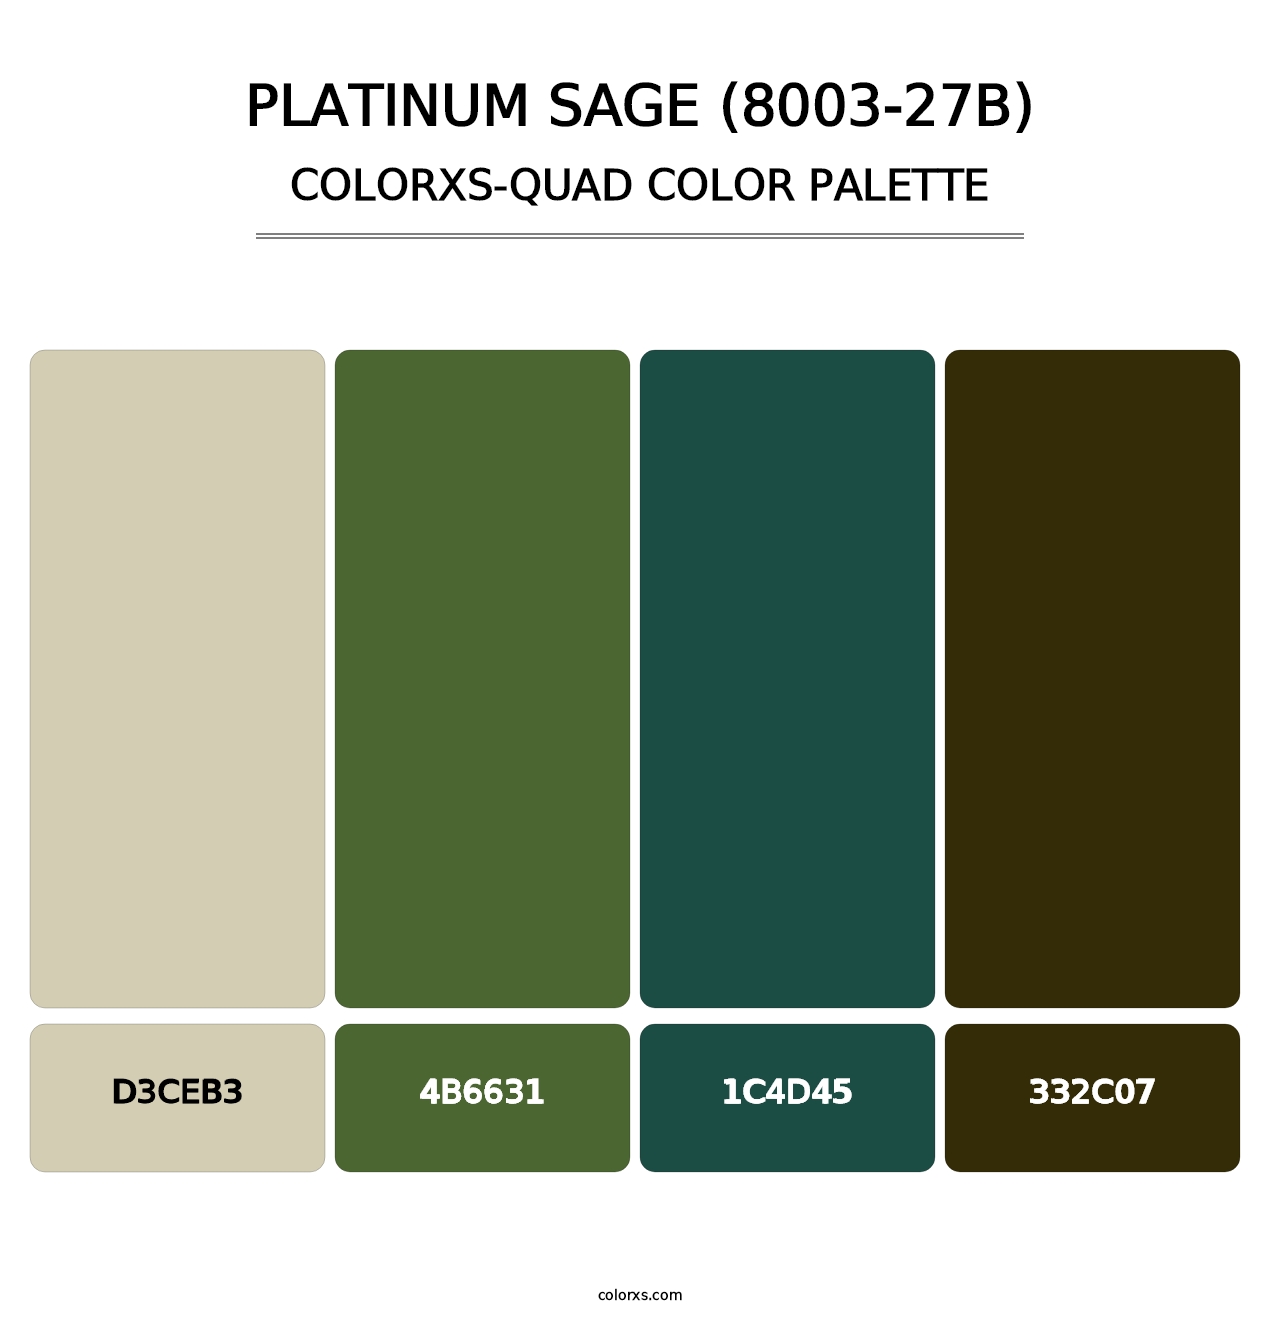 Platinum Sage (8003-27B) - Colorxs Quad Palette